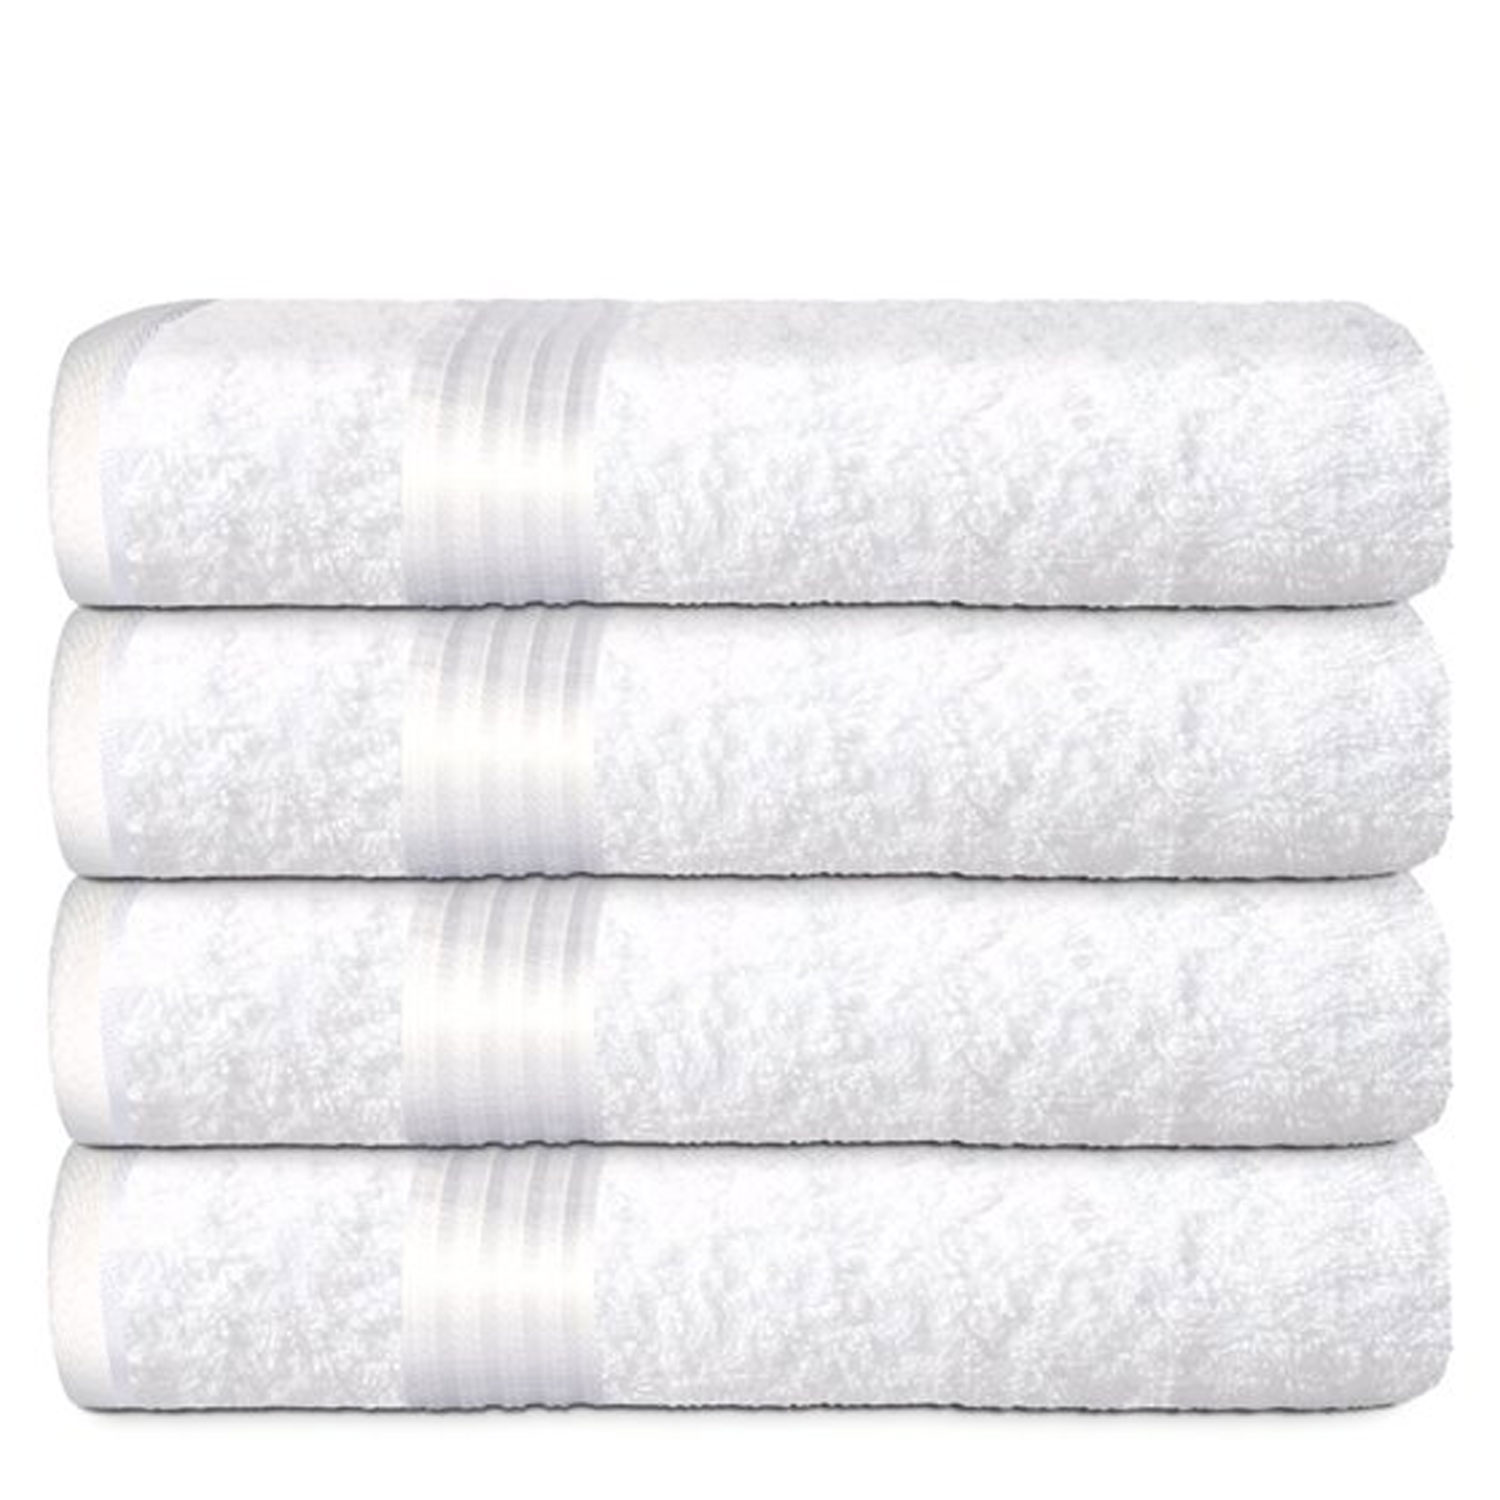 100% Cotton Bath Towel Set, 4 Piece